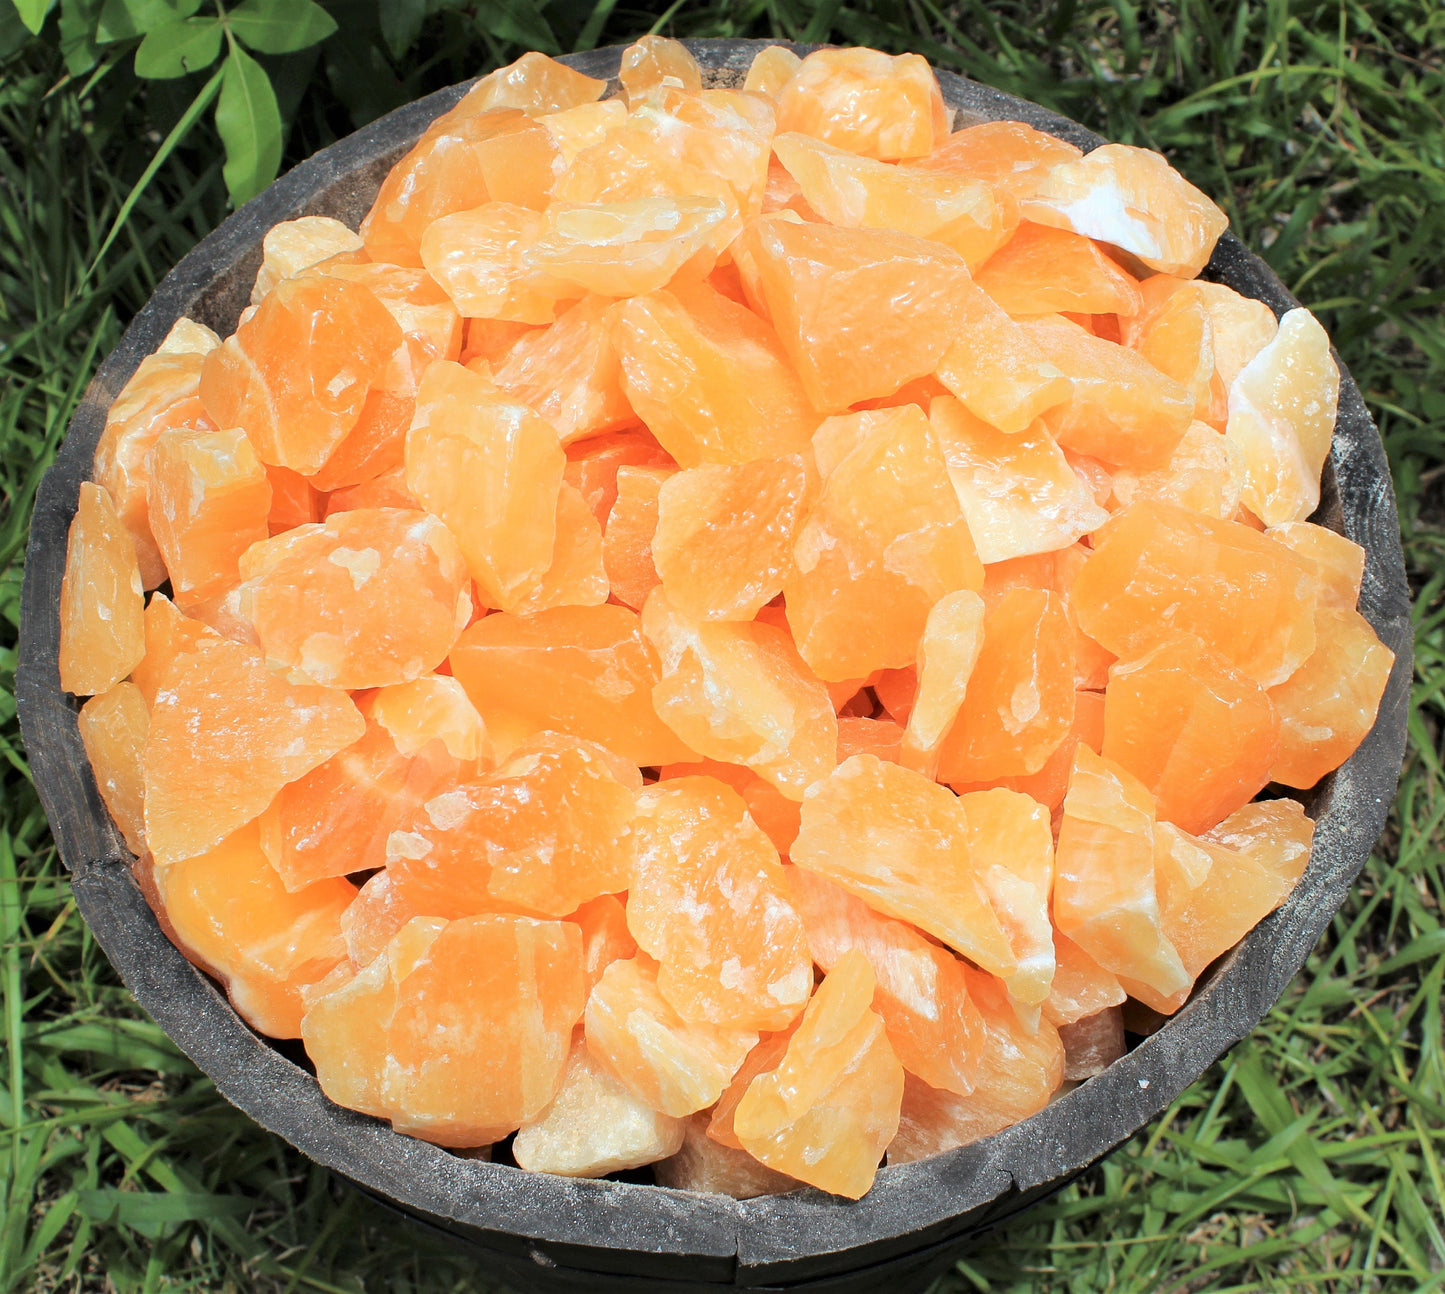 Rough Orange Calcite Natural Stones